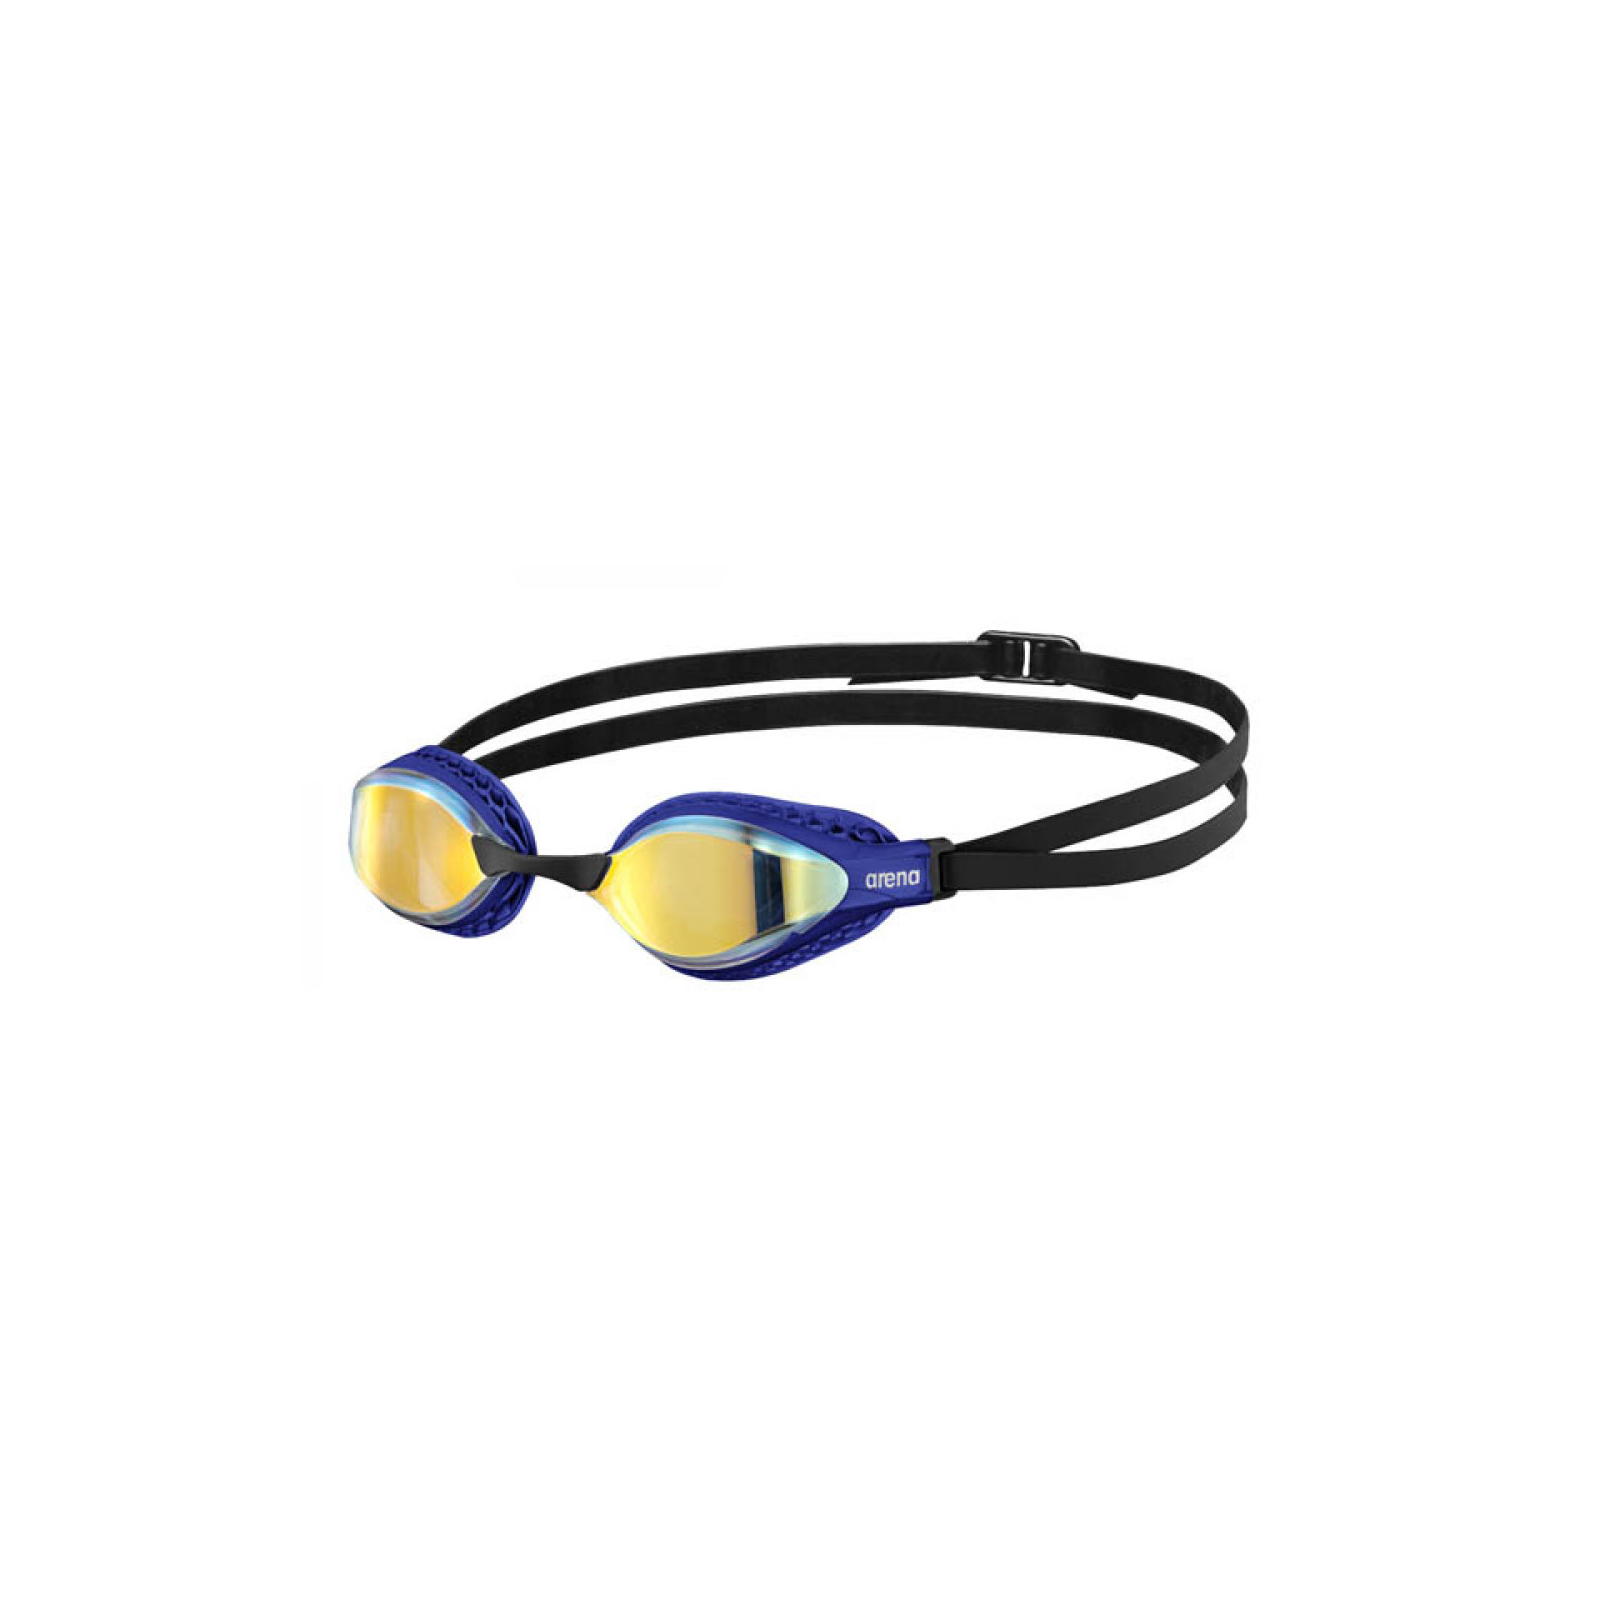 Окуляри для плавання Arena Air-Speed Mirror 003151-206 жовтий, мідно-золотий OSFM (3468336482100)